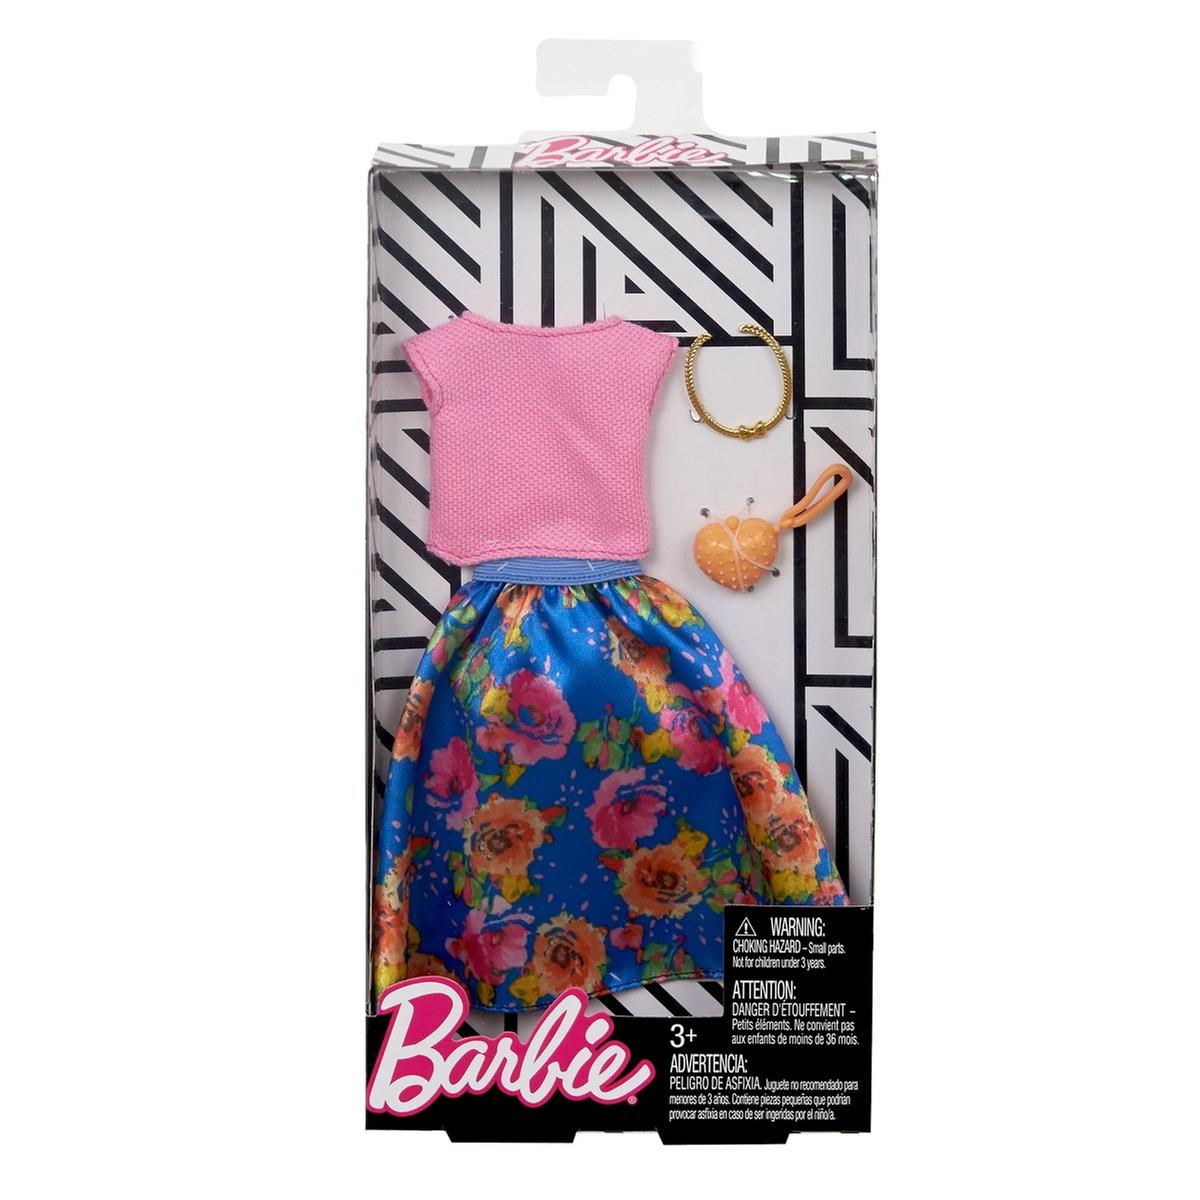 Barbie - Roupa e Complementos Fashionista (vários modelos) | Roupa | Loja  de brinquedos e videojogos Online Toysrus